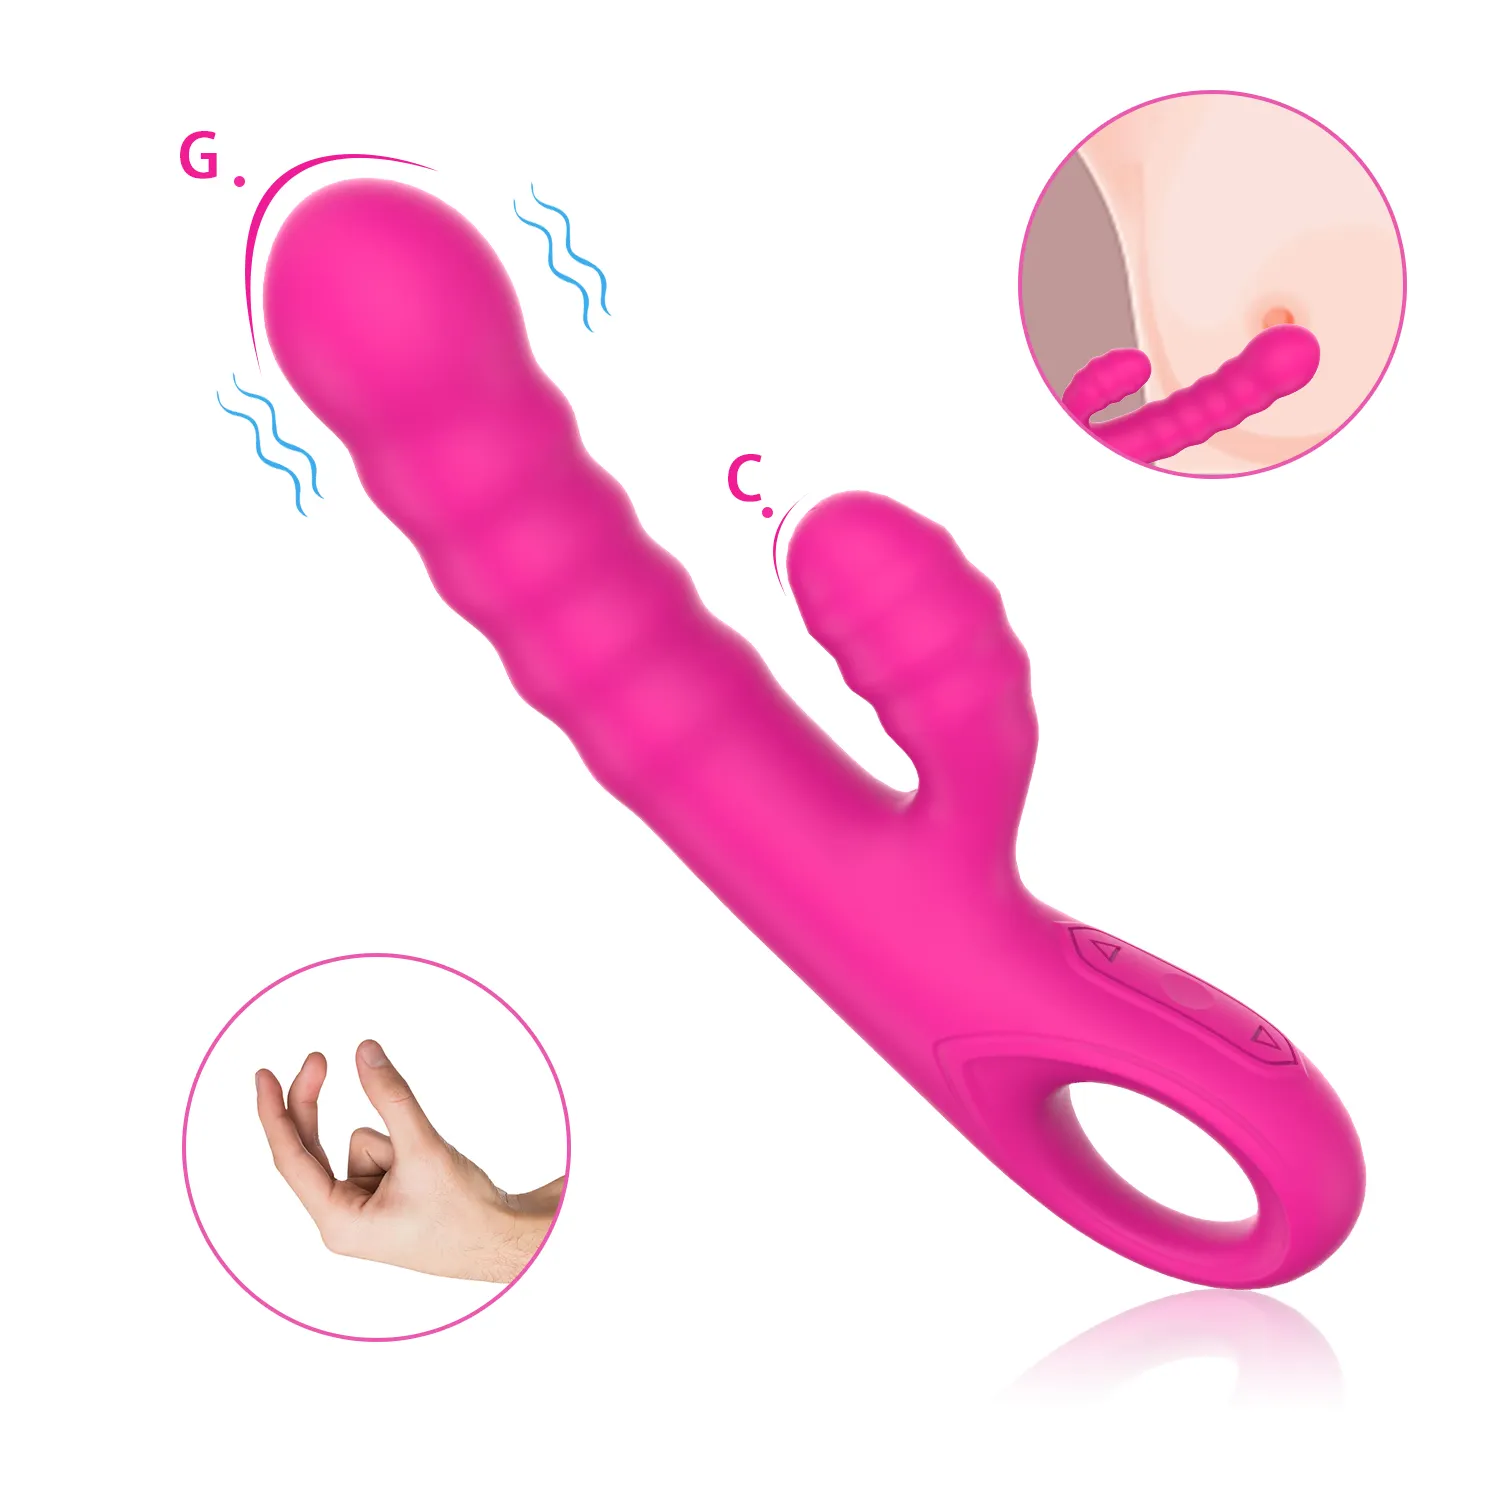 Juguetes sexuales personalizados juguetes para adultos para mujeres sexo recargable punto G silicona calefacción vibrador juguetes sexuales para mujeres vibradores